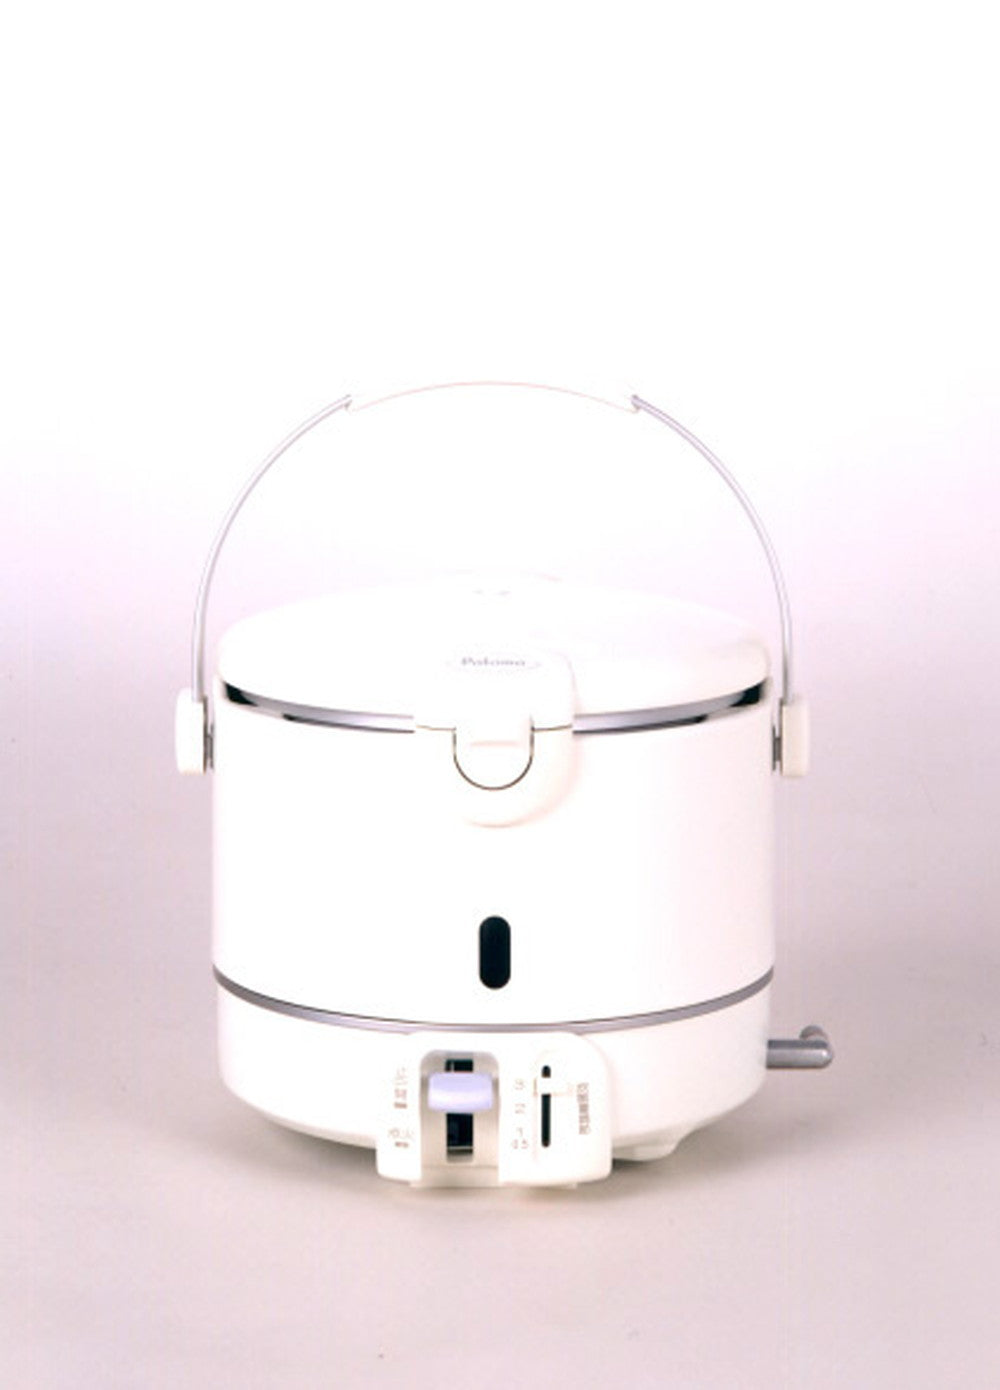 ガス炊飯器 都市ガス用 PR-100DF-1 パロマ - 炊飯器